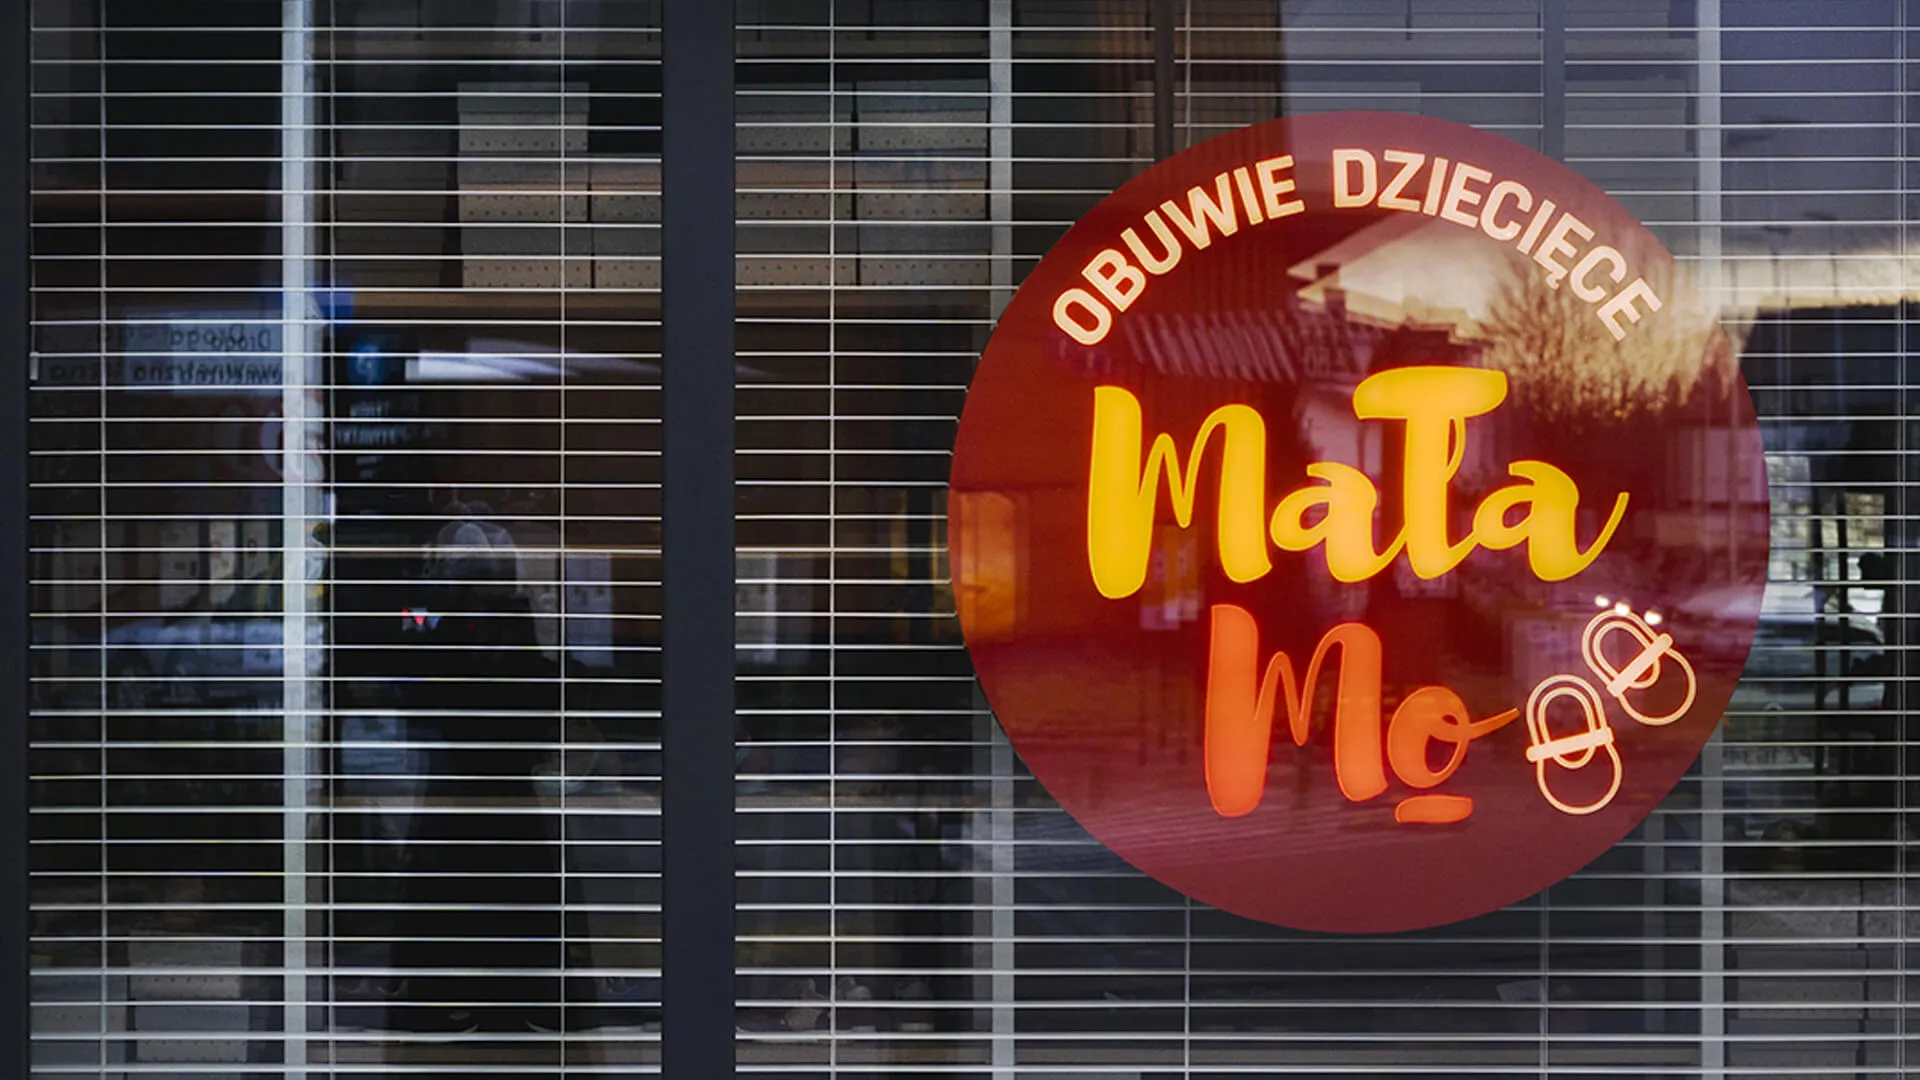 Piccolo Mo - negozio illuminato, dietro un vetro giallo e rosso.